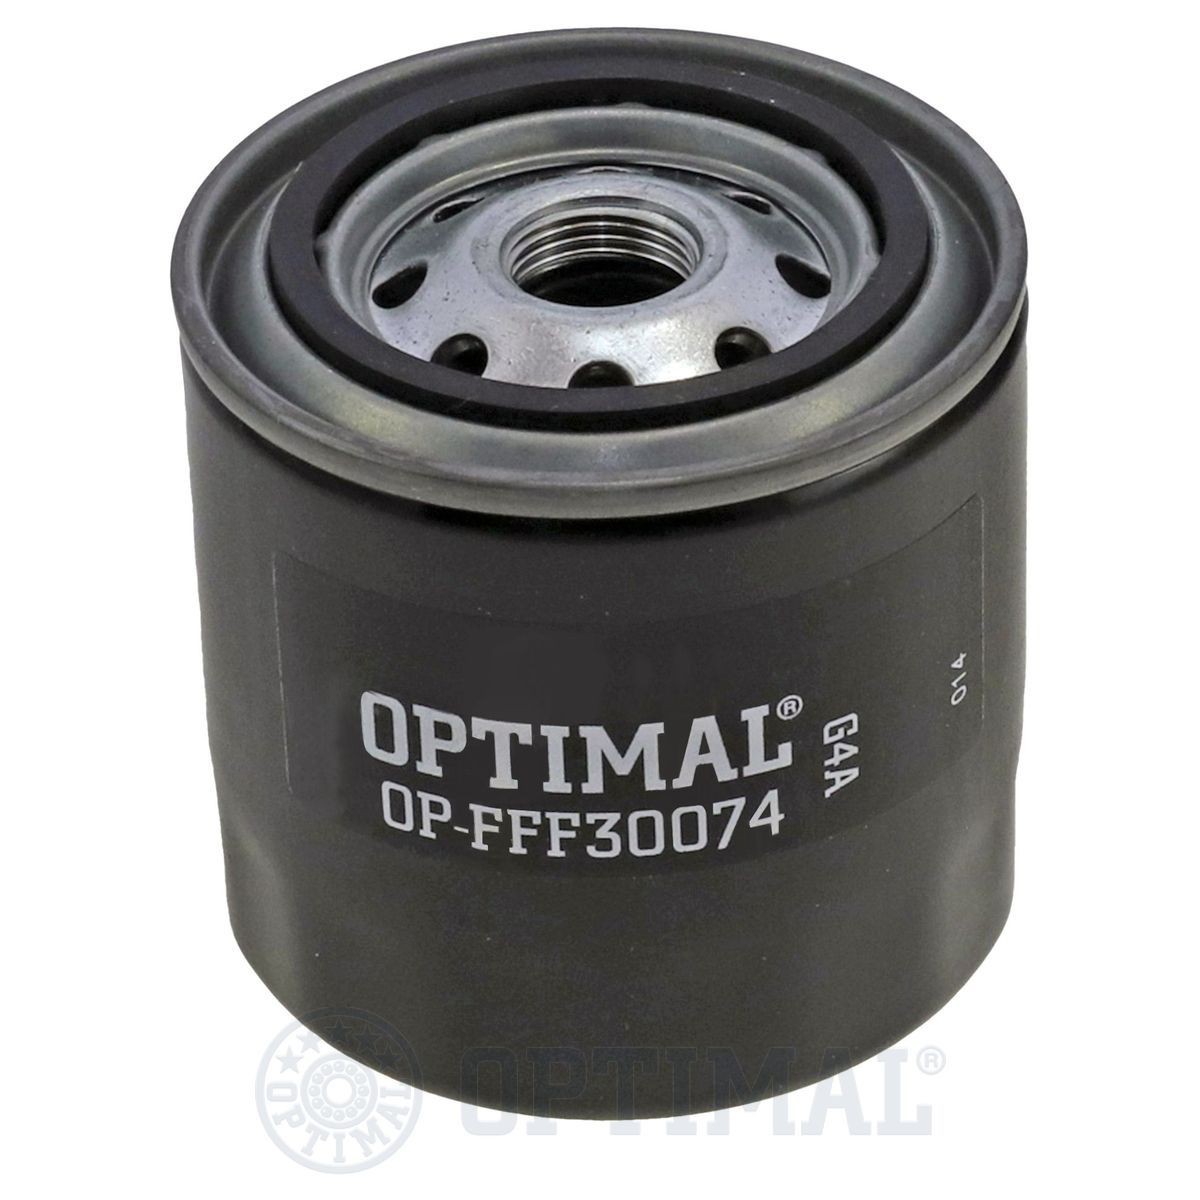 OPTIMAL OP-FFF30074 Oil filter 7825516